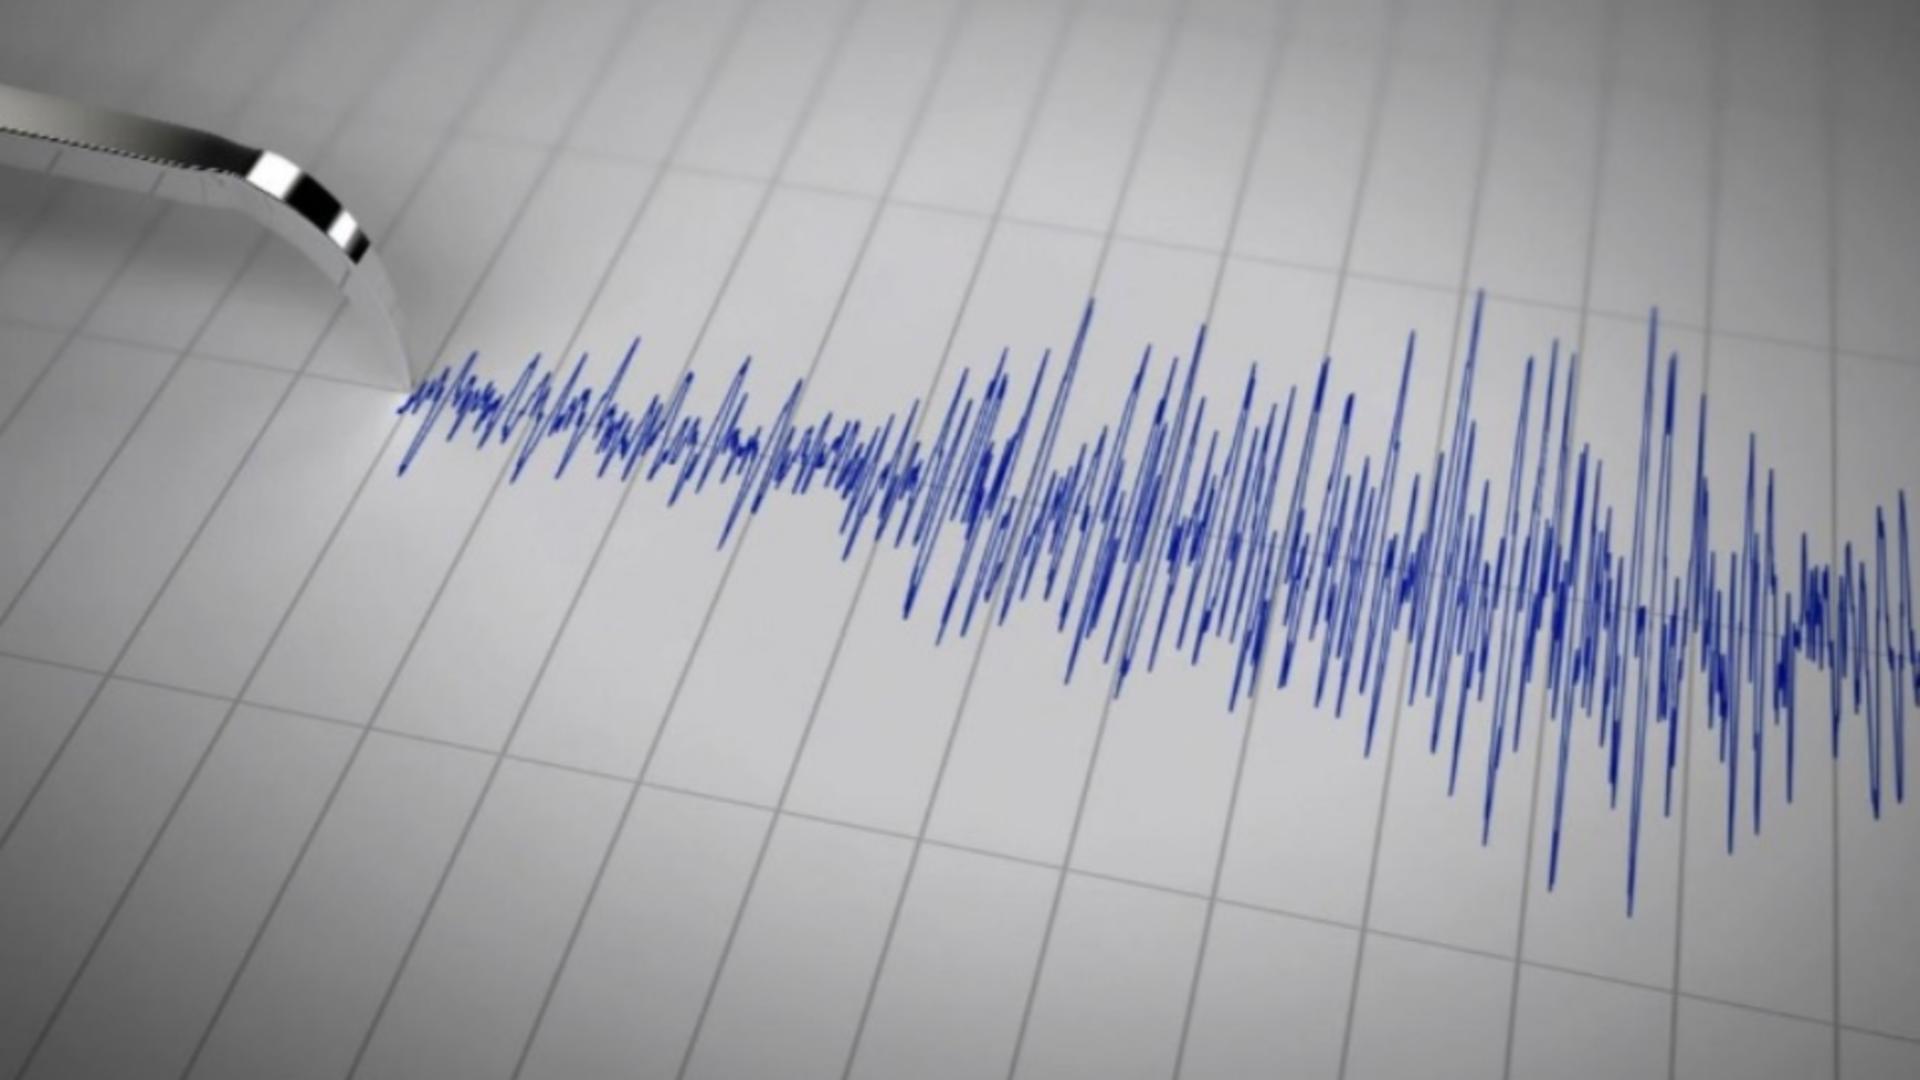 Cutremurul s-a produs în zona seismică Vrancea